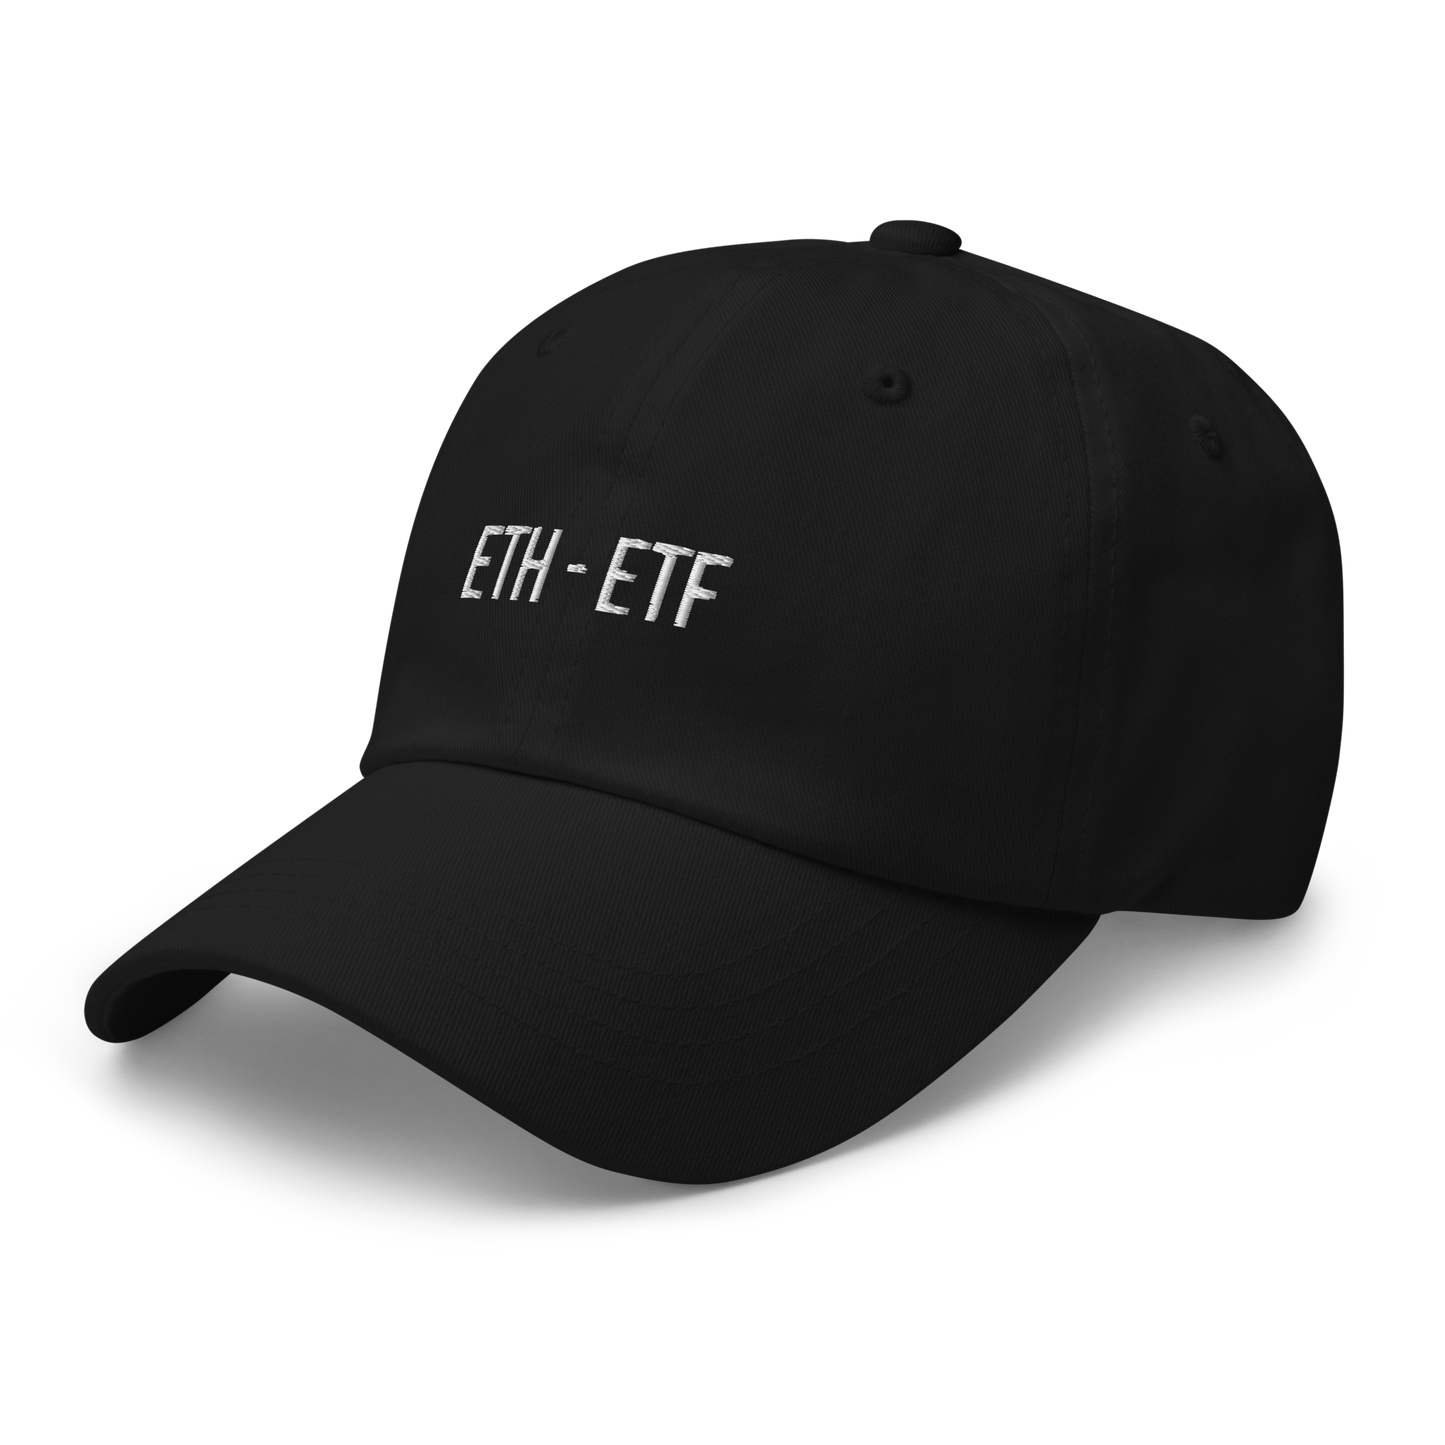 ETH ETF - Cap